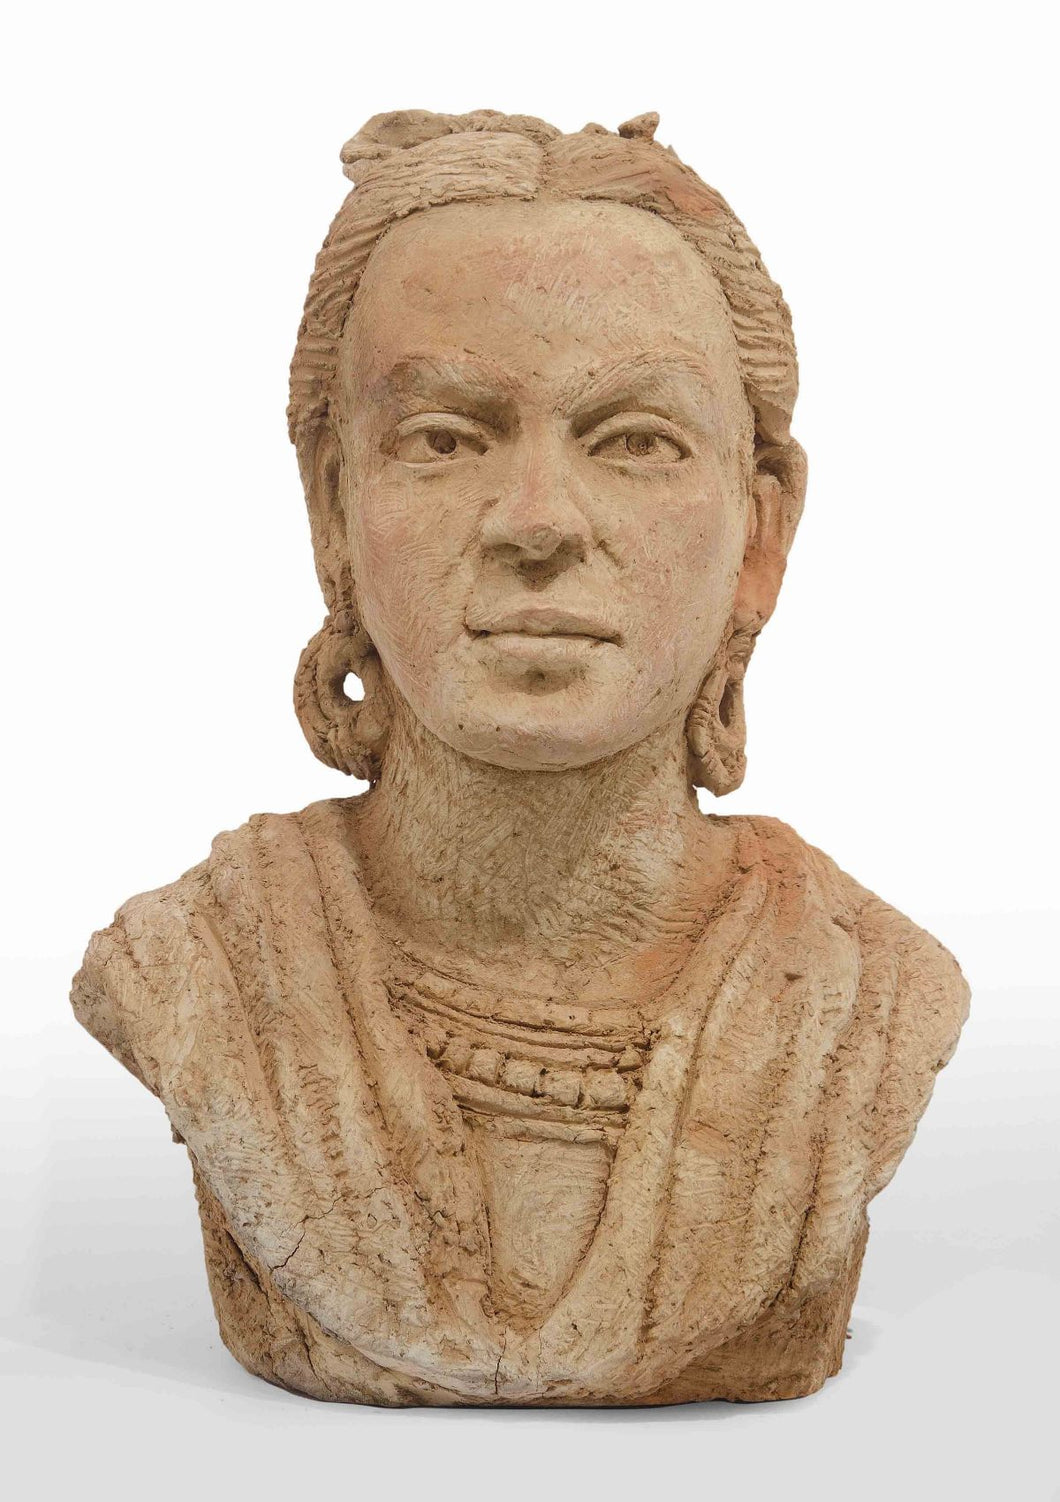 Frida 1 : Terracotta sculpture by RamKumar Manna